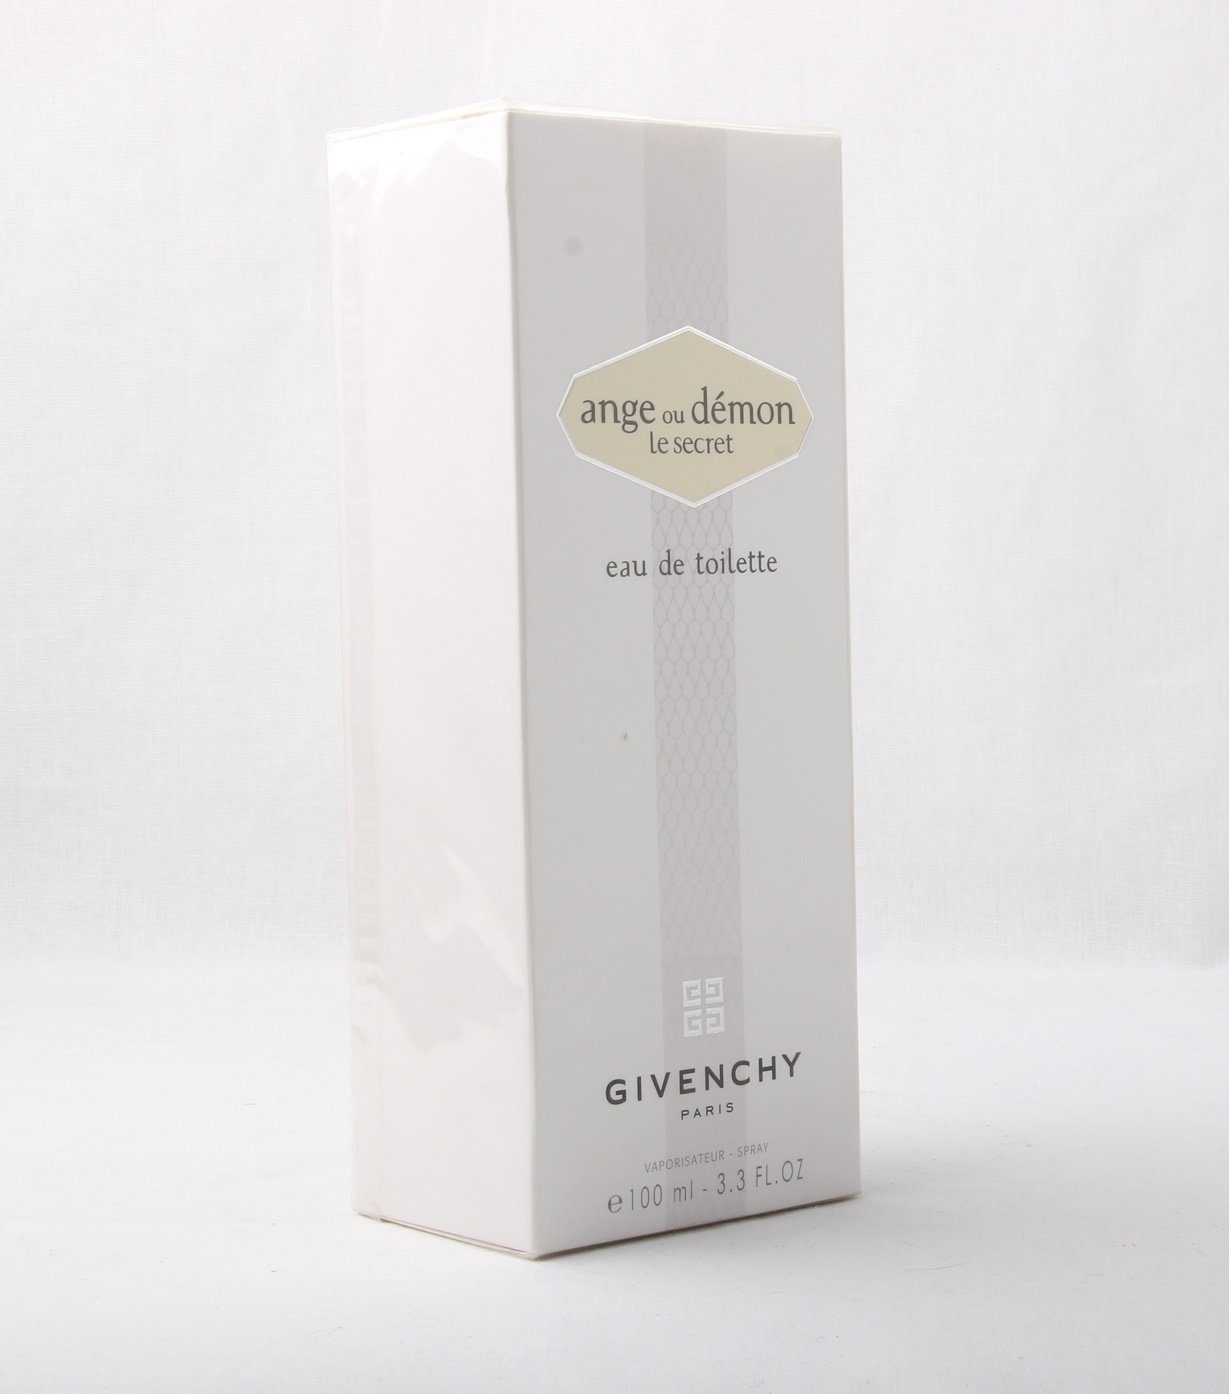 GIVENCHY Ange Spray Toilette 100ml de Givenchy Demon Secret de le Eau Eau Toilette ou